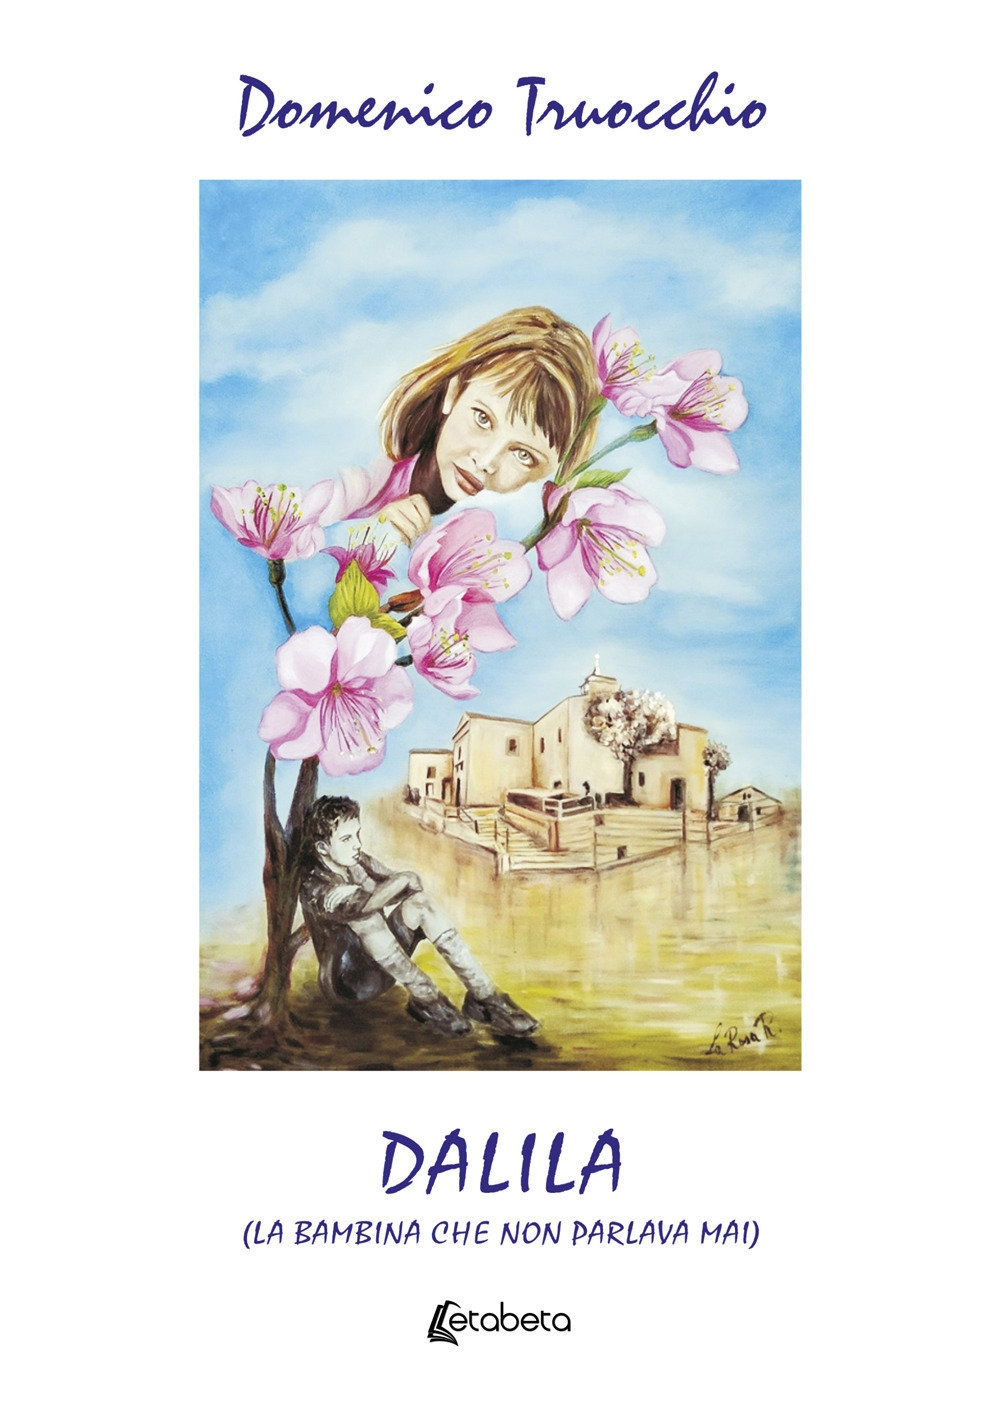 Dalila (la bambina che non parlava mai)